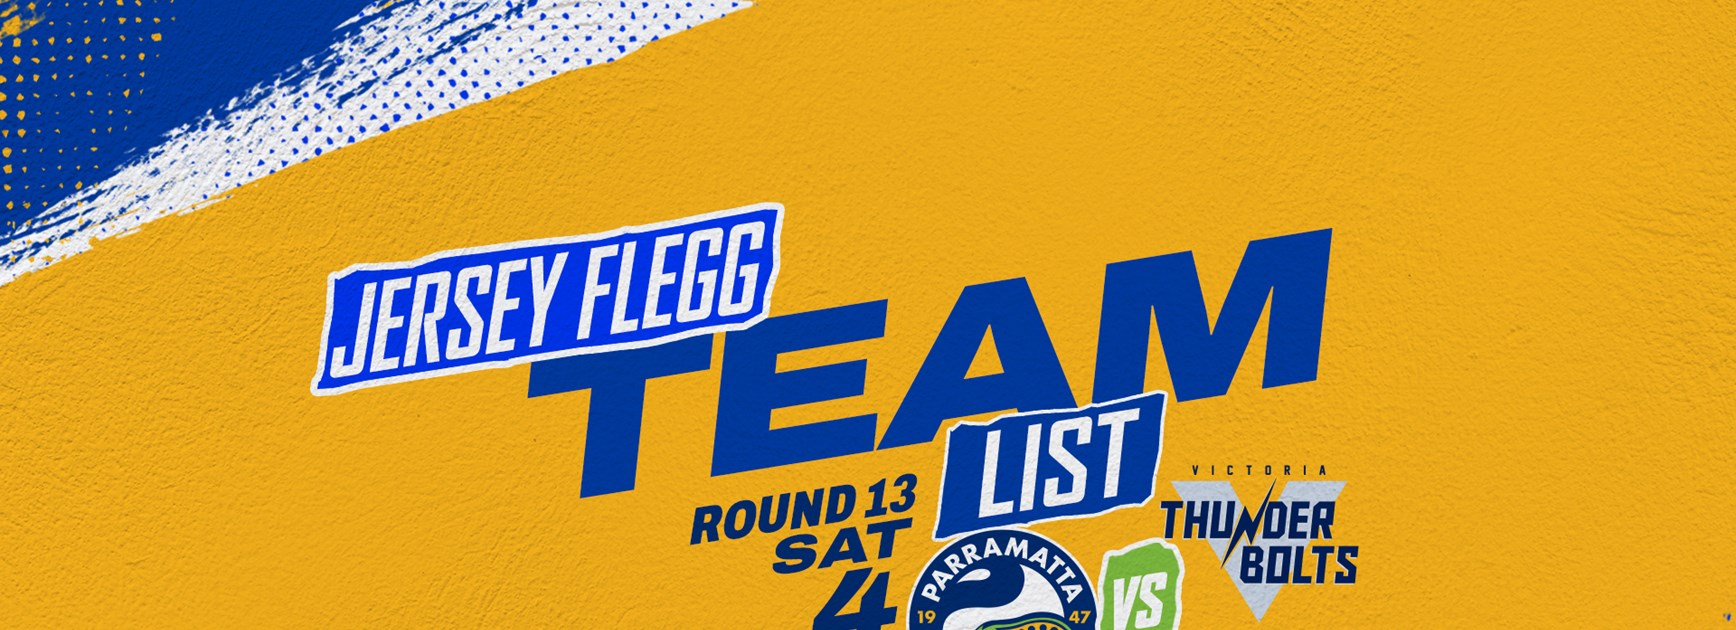 Jersey Flegg Cup Team List - Round 13